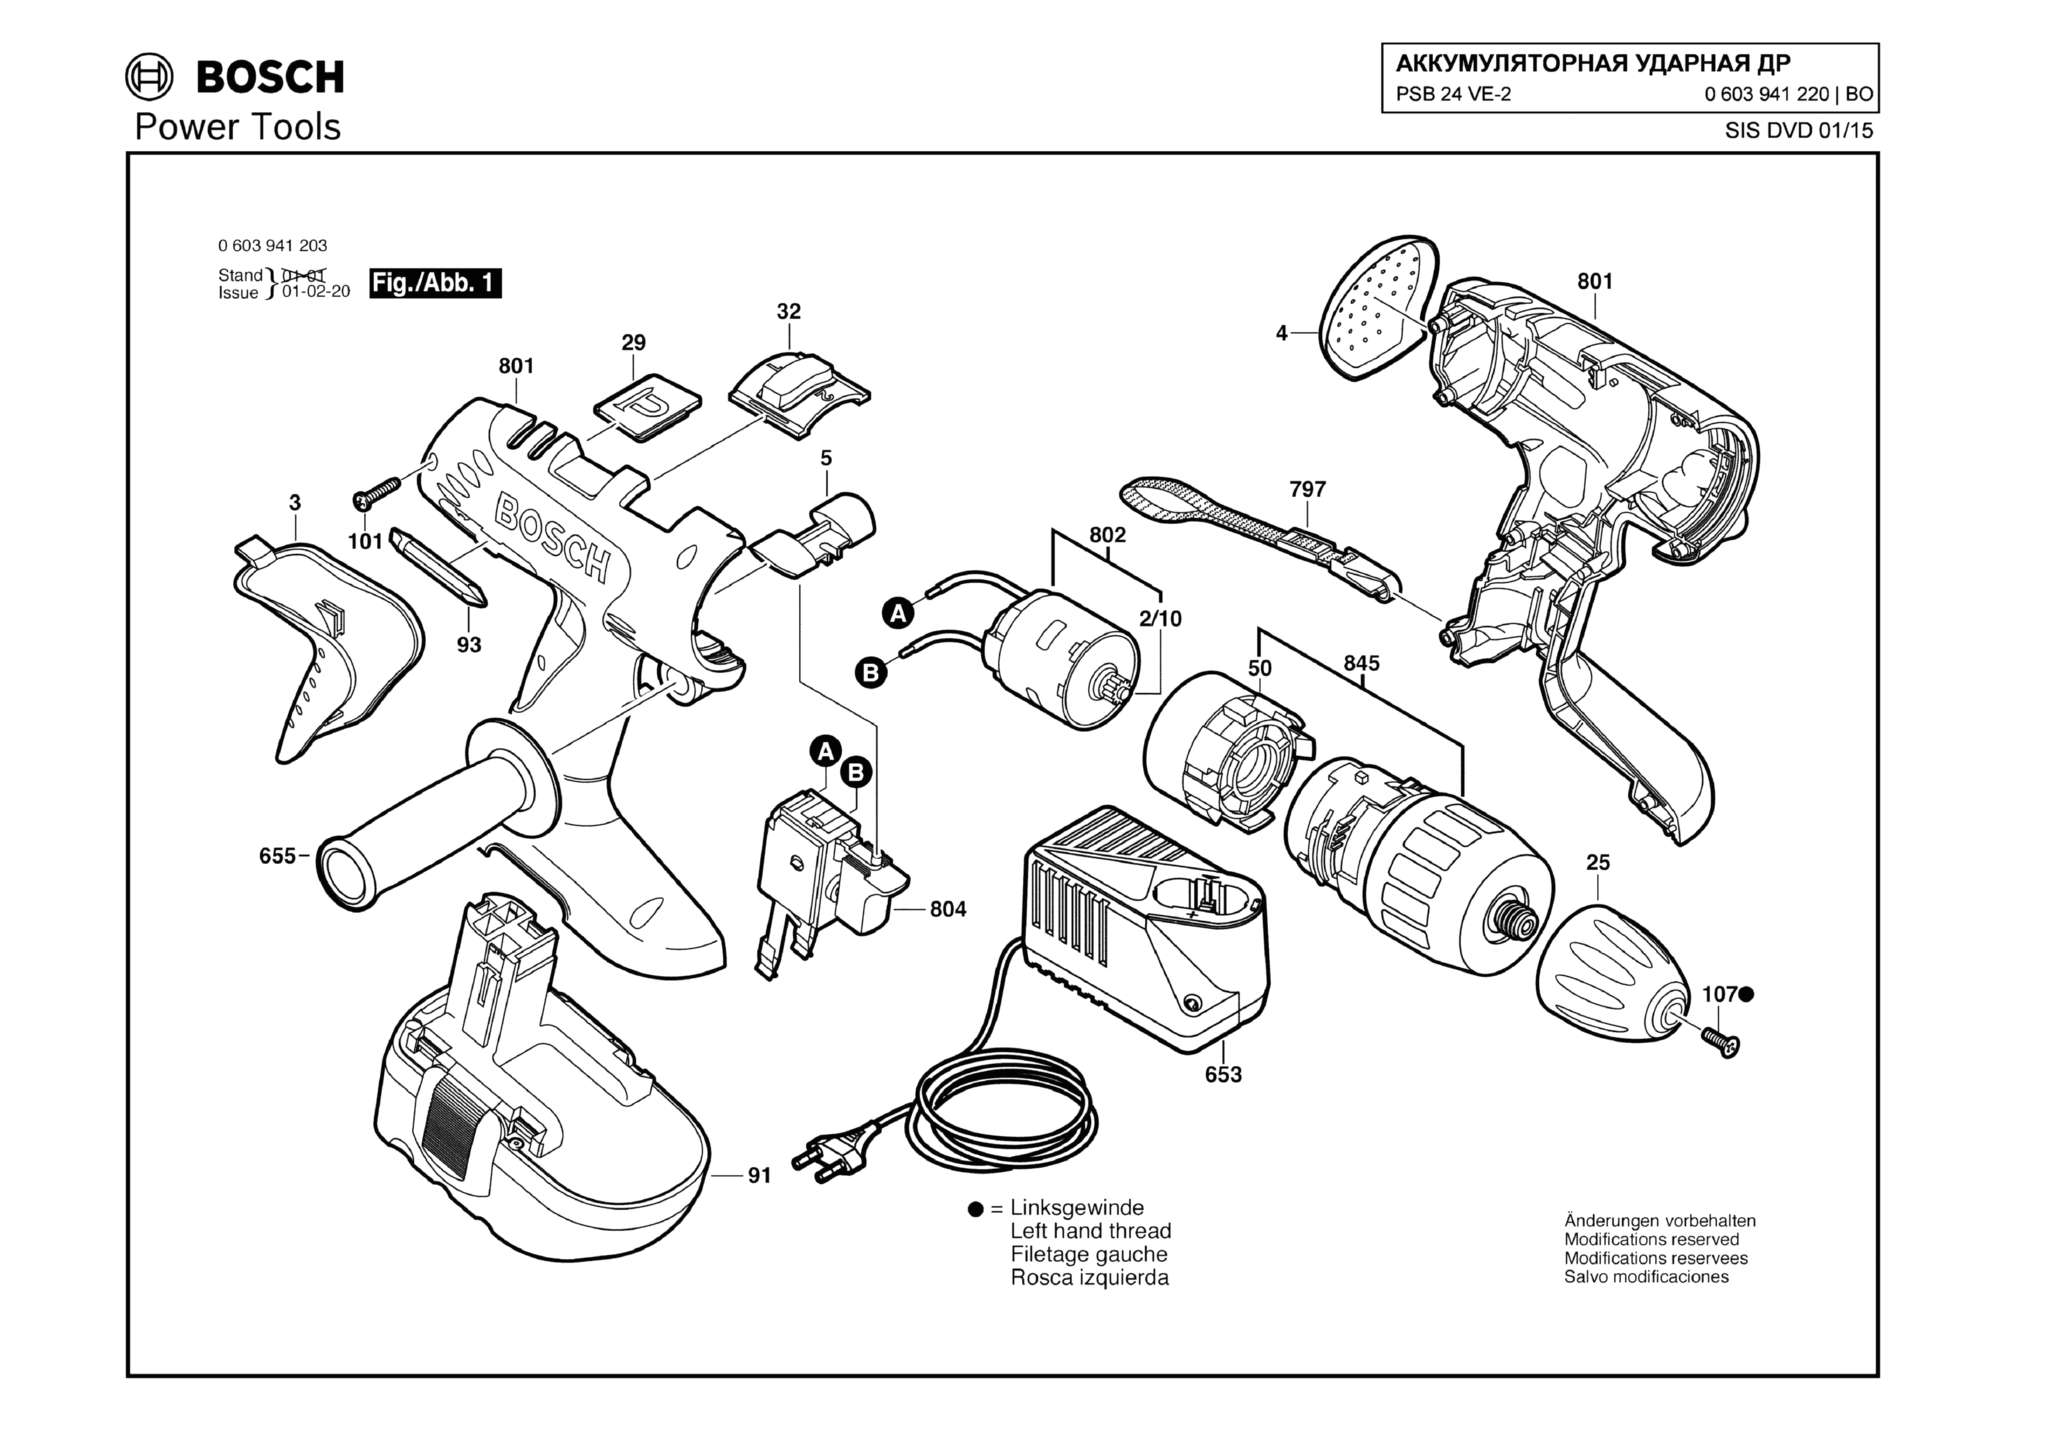 Запчасти, схема и деталировка Bosch PSB 24 VE-2 (ТИП 0603941220)